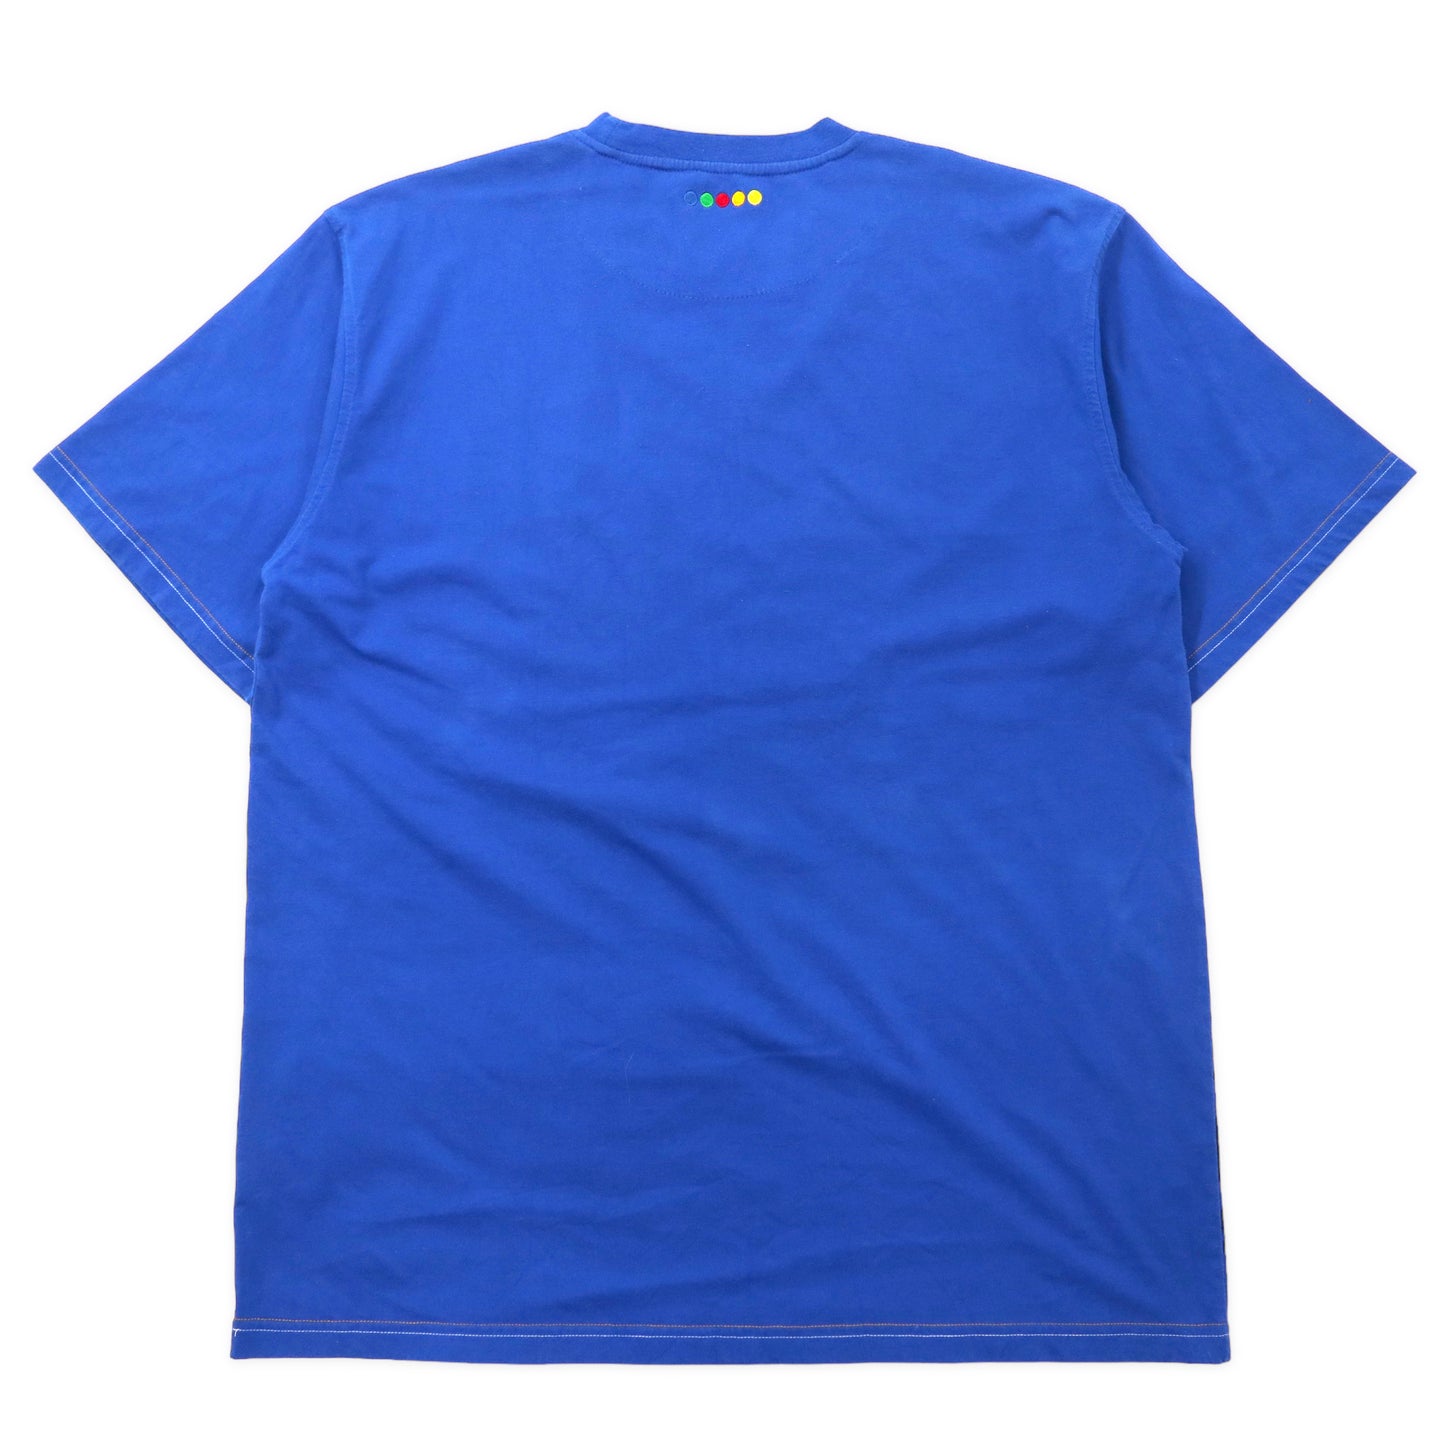 COOGI アニマル刺繍 Tシャツ 3XL ブルー コットン 総柄 ビッグサイズ